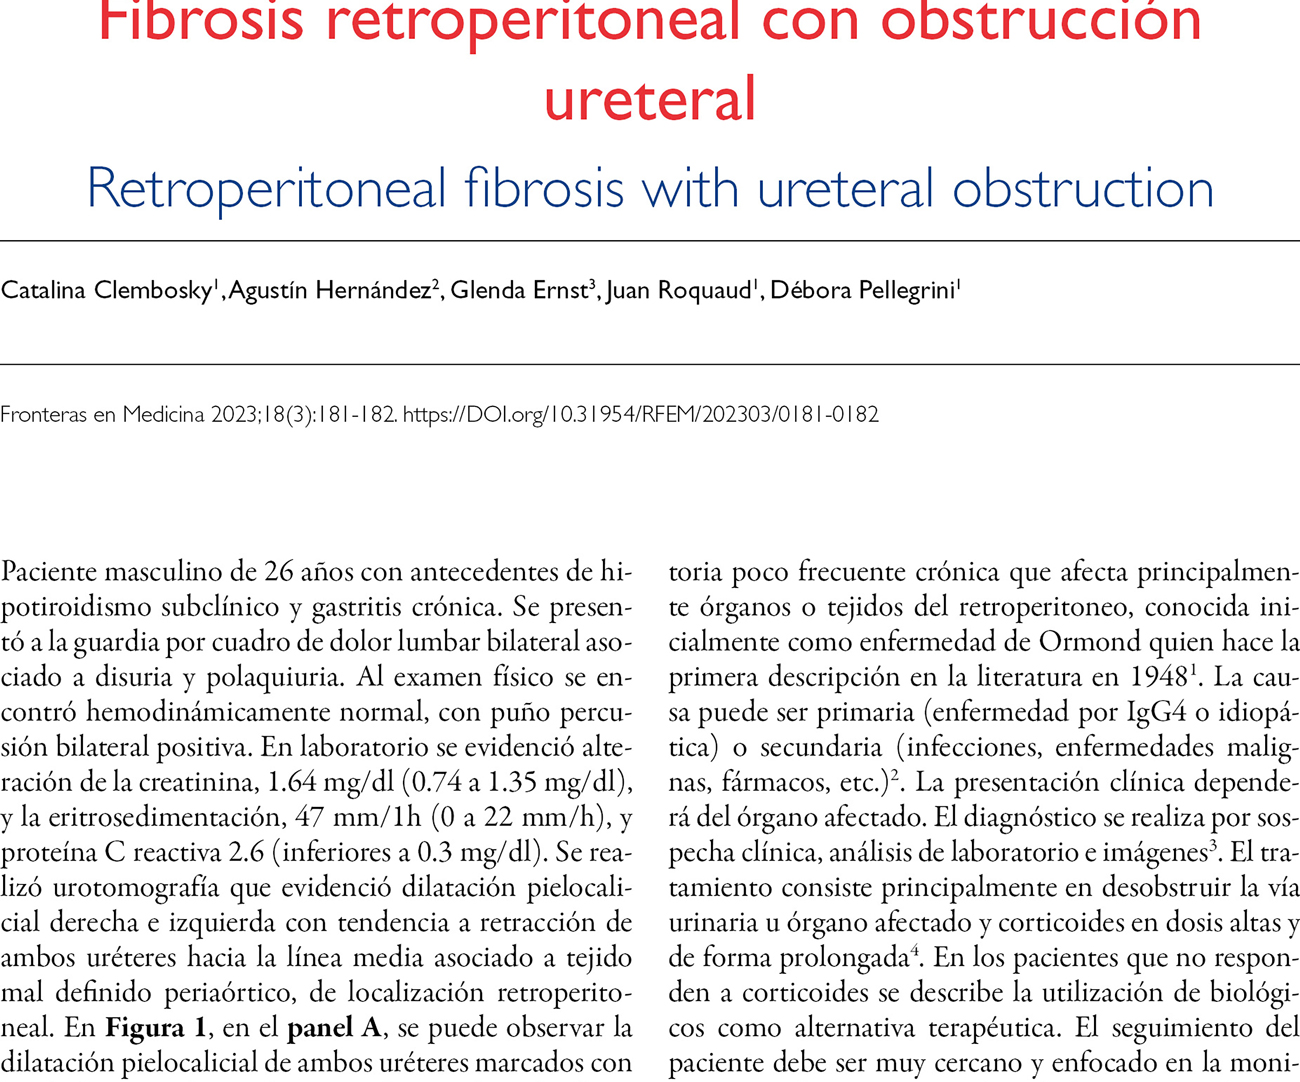 Fibrosis retroperitoneal con obstrucción ureteral 